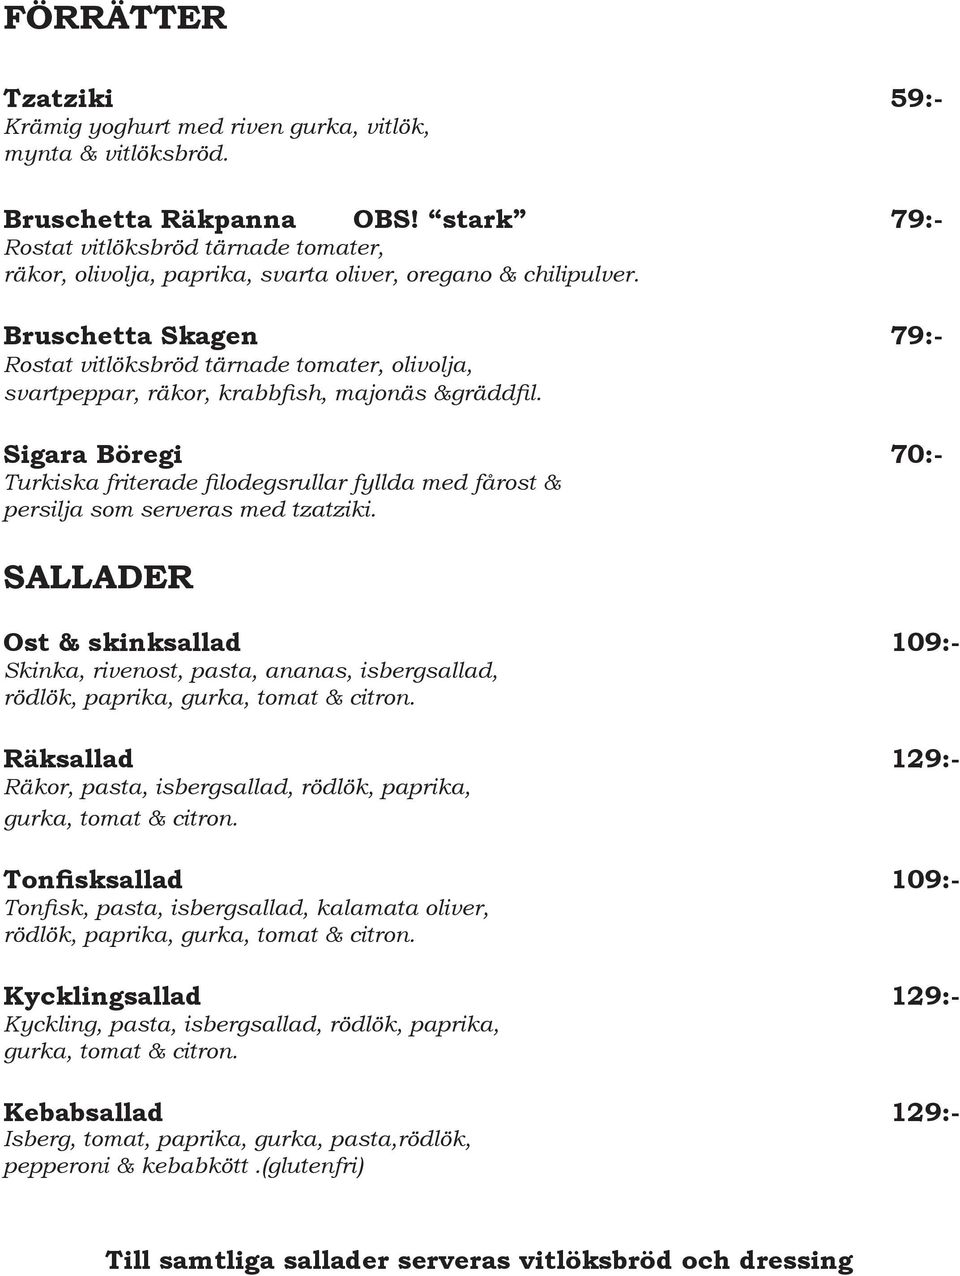 Bruschetta Skagen 79:- Rostat vitlöksbröd tärnade tomater, olivolja, svartpeppar, räkor, krabbfish, majonäs &gräddfil.